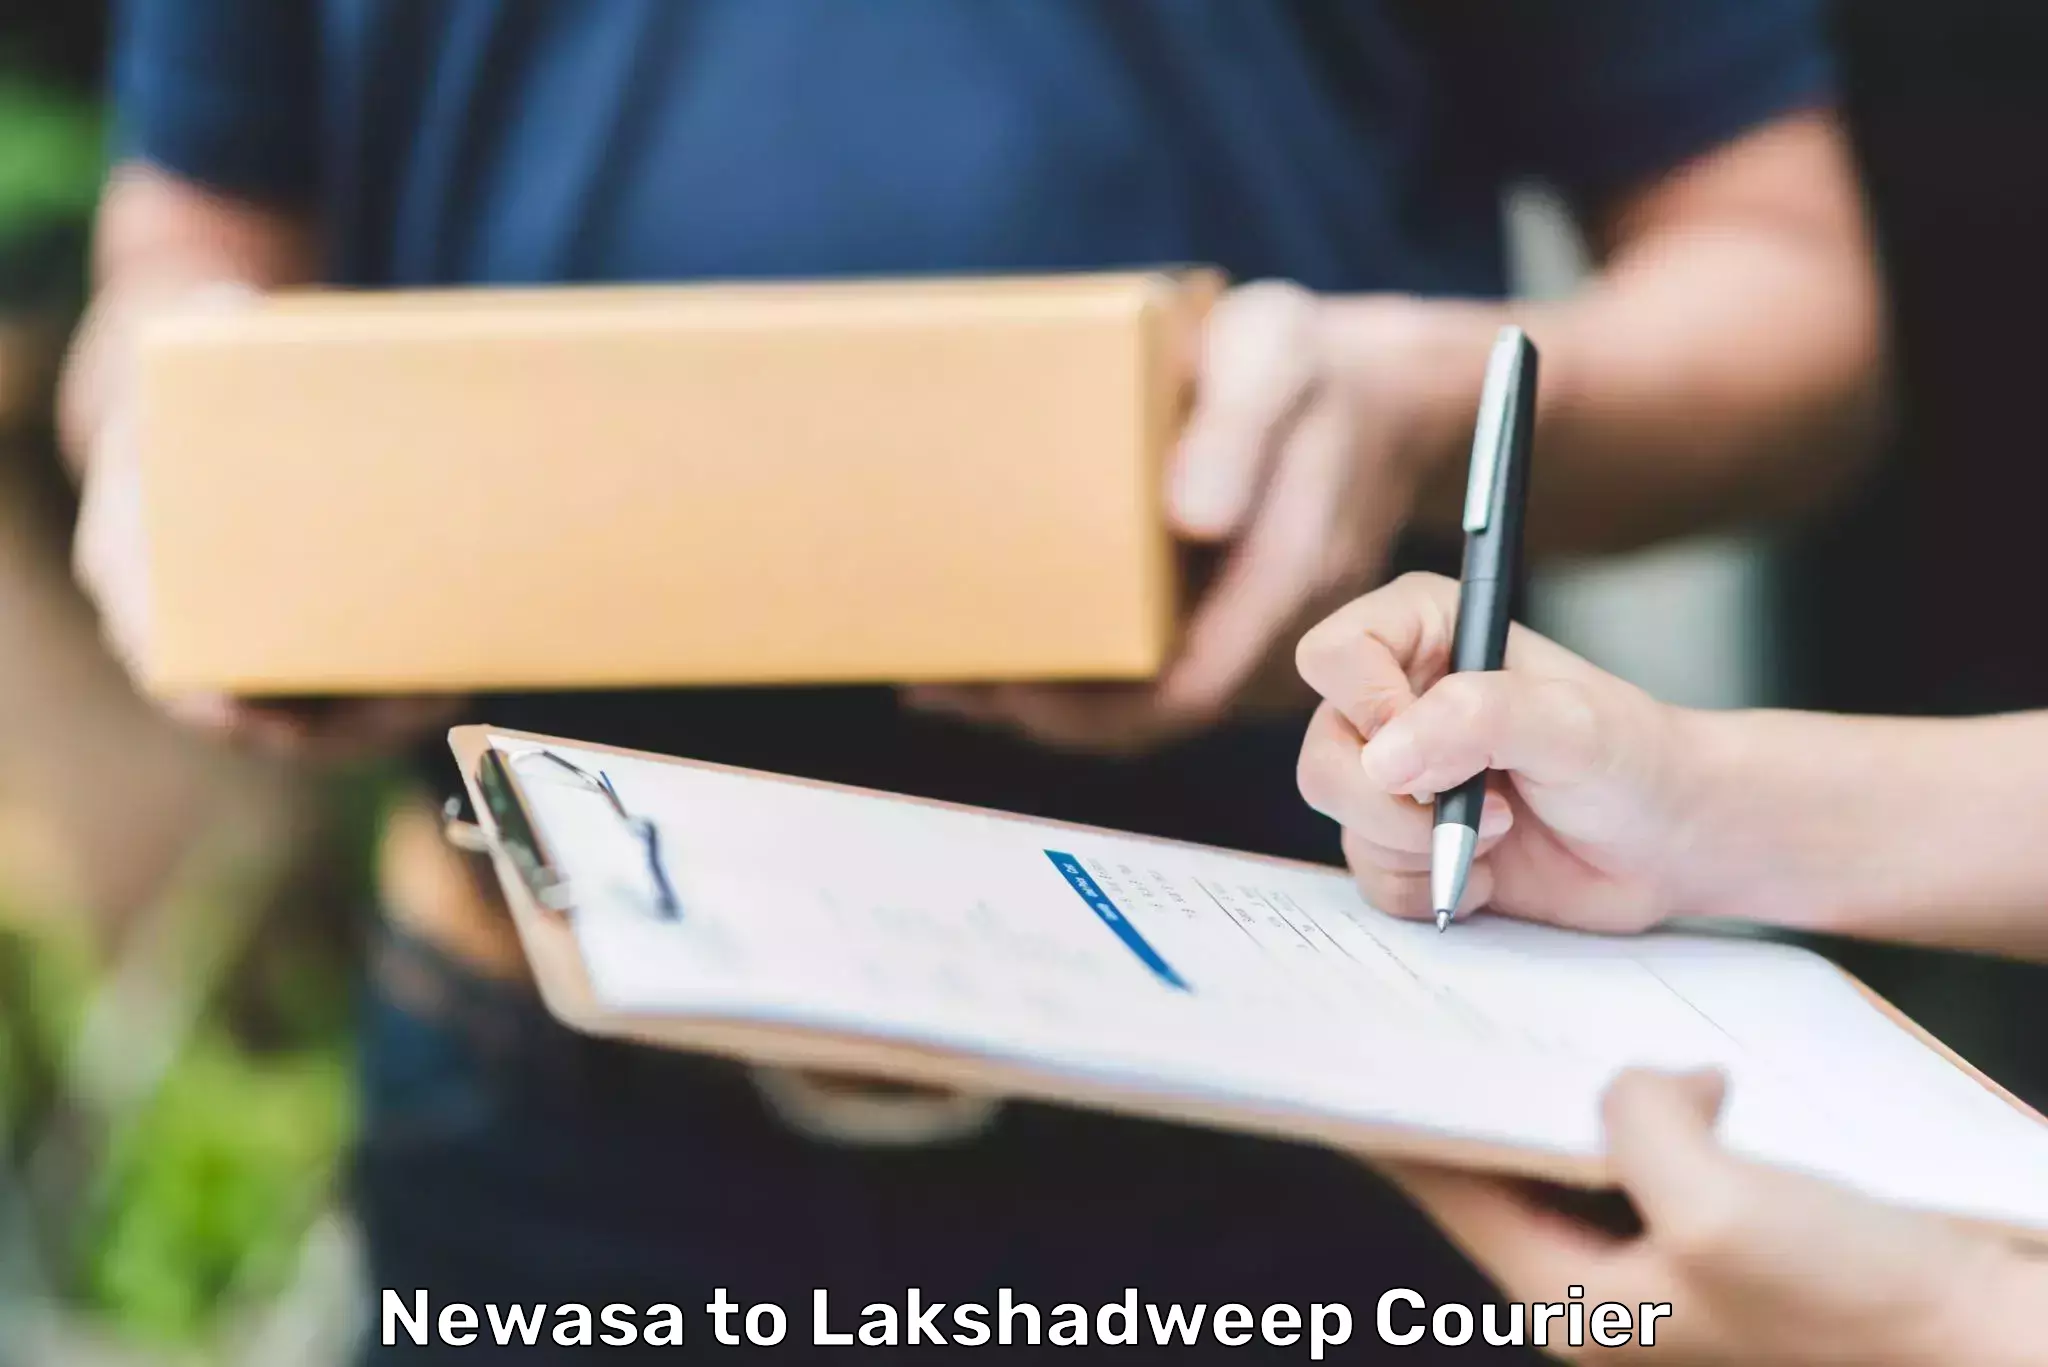 High-capacity parcel service Newasa to Lakshadweep